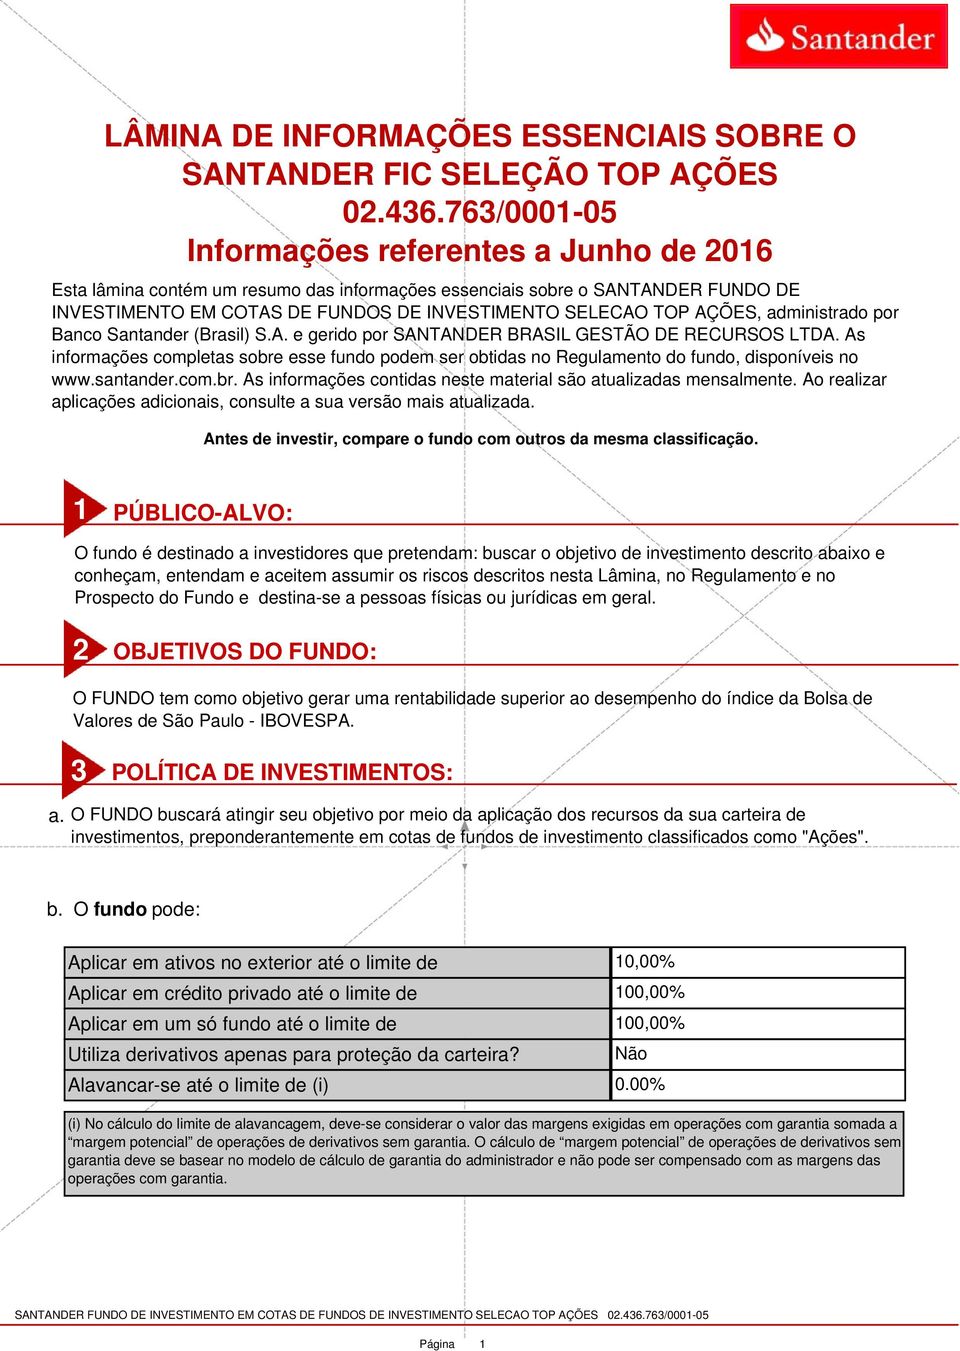 AÇÕES, administrado por Banco Santander (Brasil) S.A. e gerido por SANTANDER BRASIL GESTÃO DE RECURSOS LTDA.